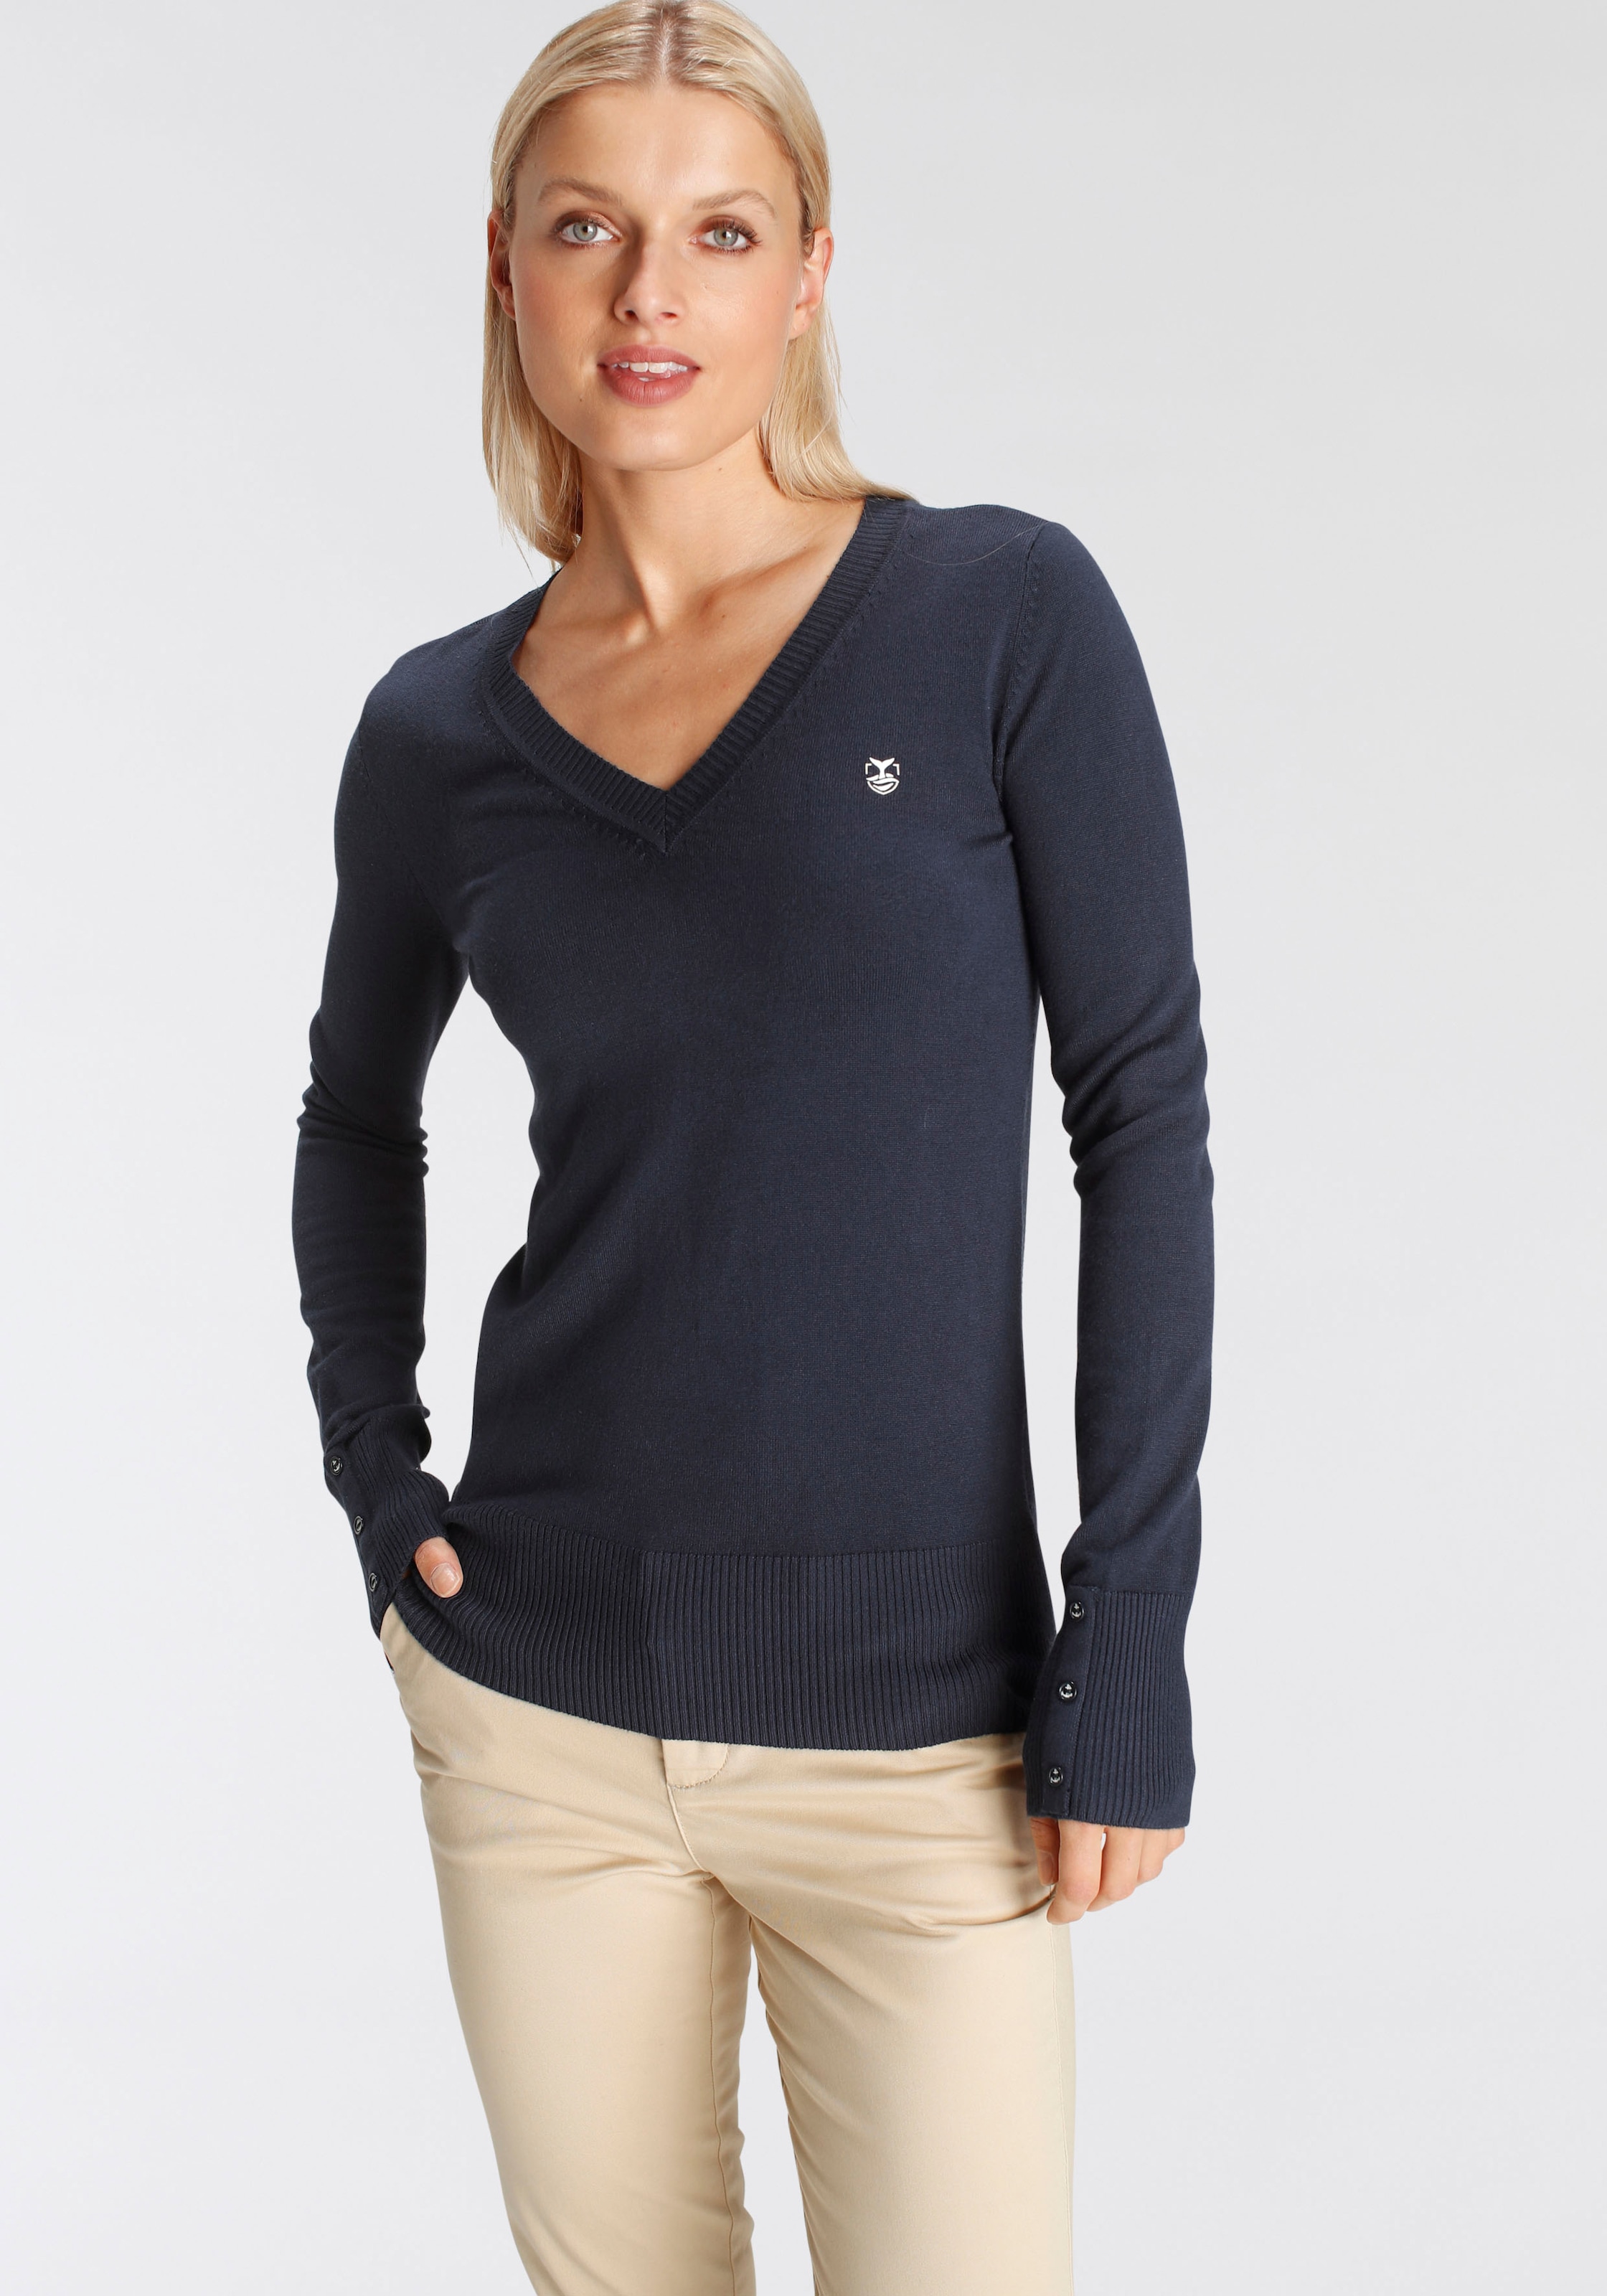 DELMAO V-Ausschnitt-Pullover, mit kleinem Logodruck auf der Brust - NEUE  MARKE! kaufen bei OTTO